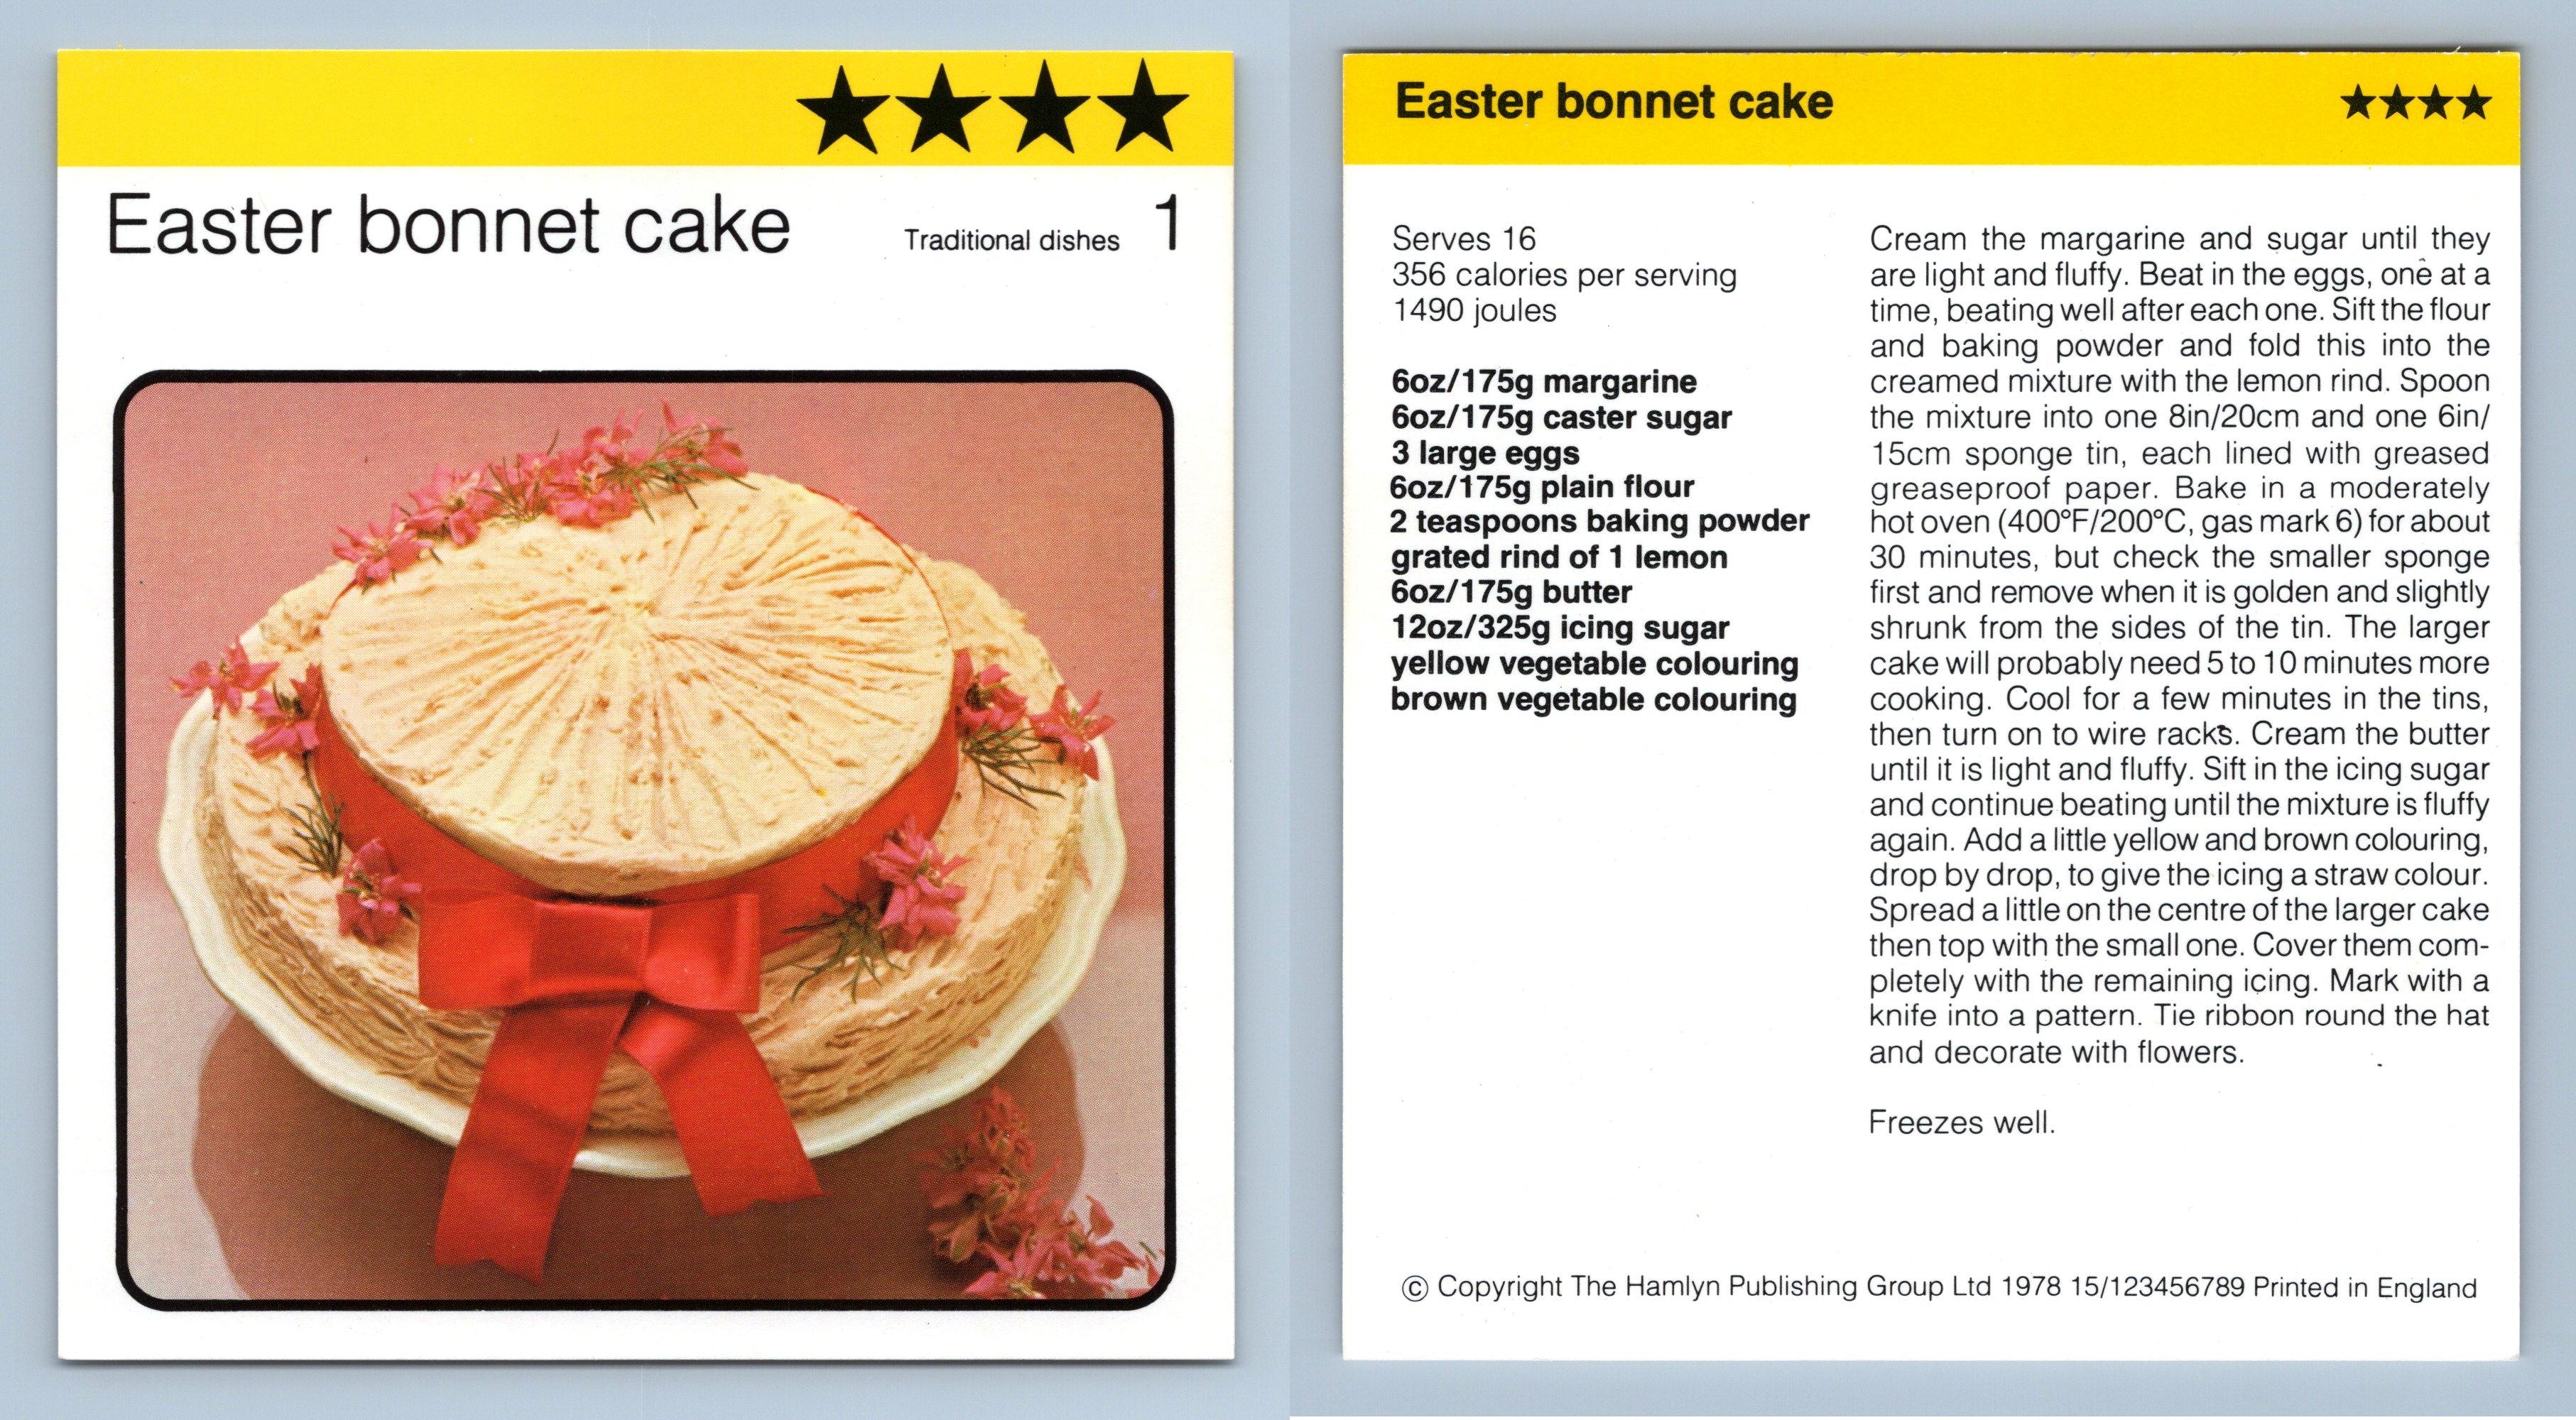 Easter Bonnet Cake | Digital image | Christa Georghiou | Flickr